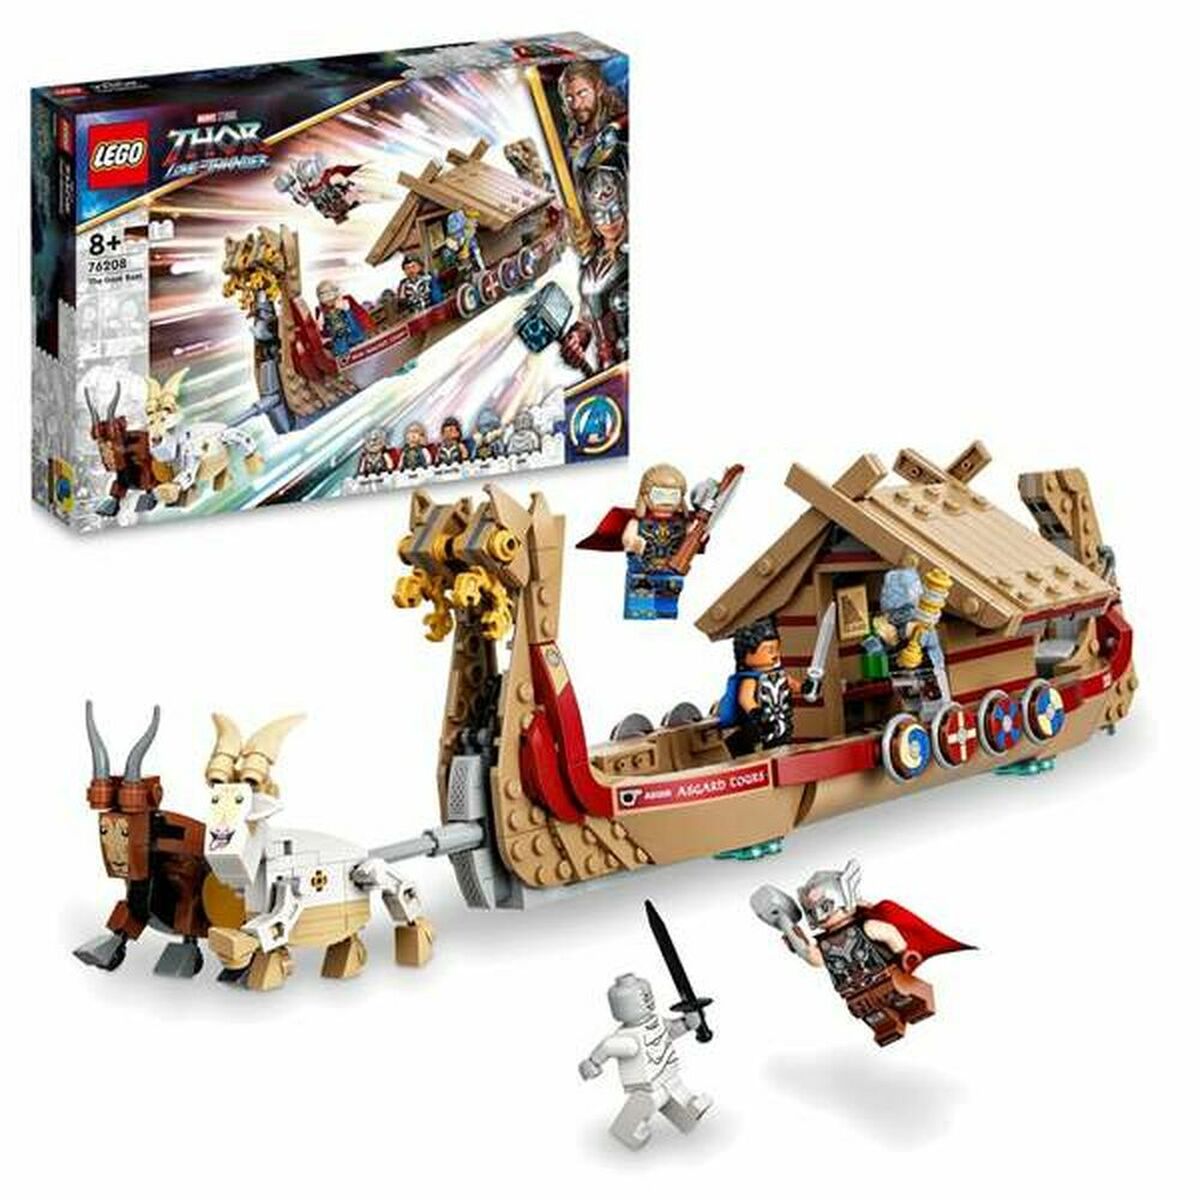 Bouwset Lego Thor Love and Thunder: The Goat Boat